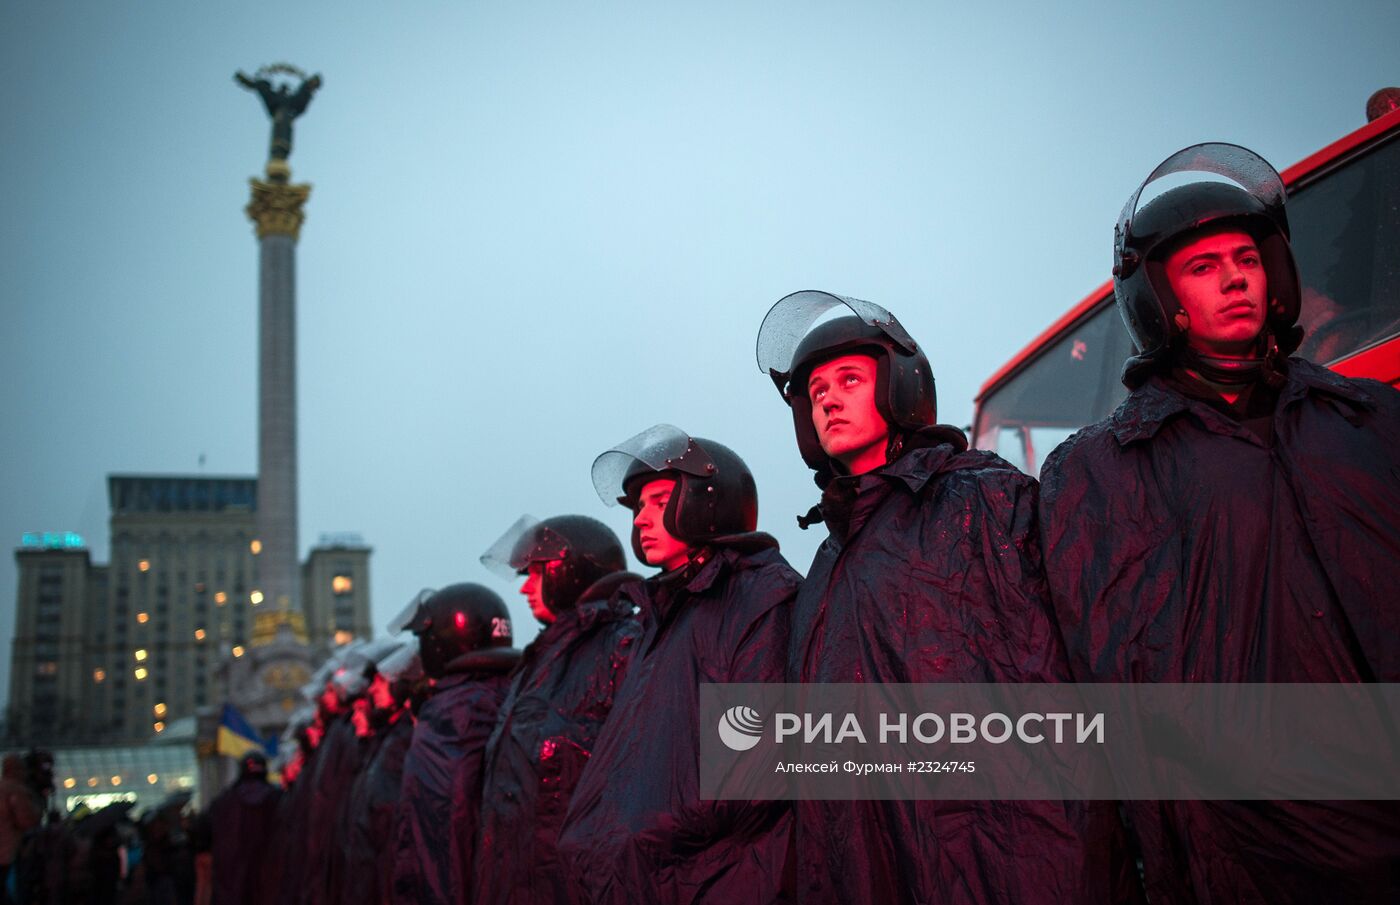 Акции сторонников вступления в Евросоюз на Майдане